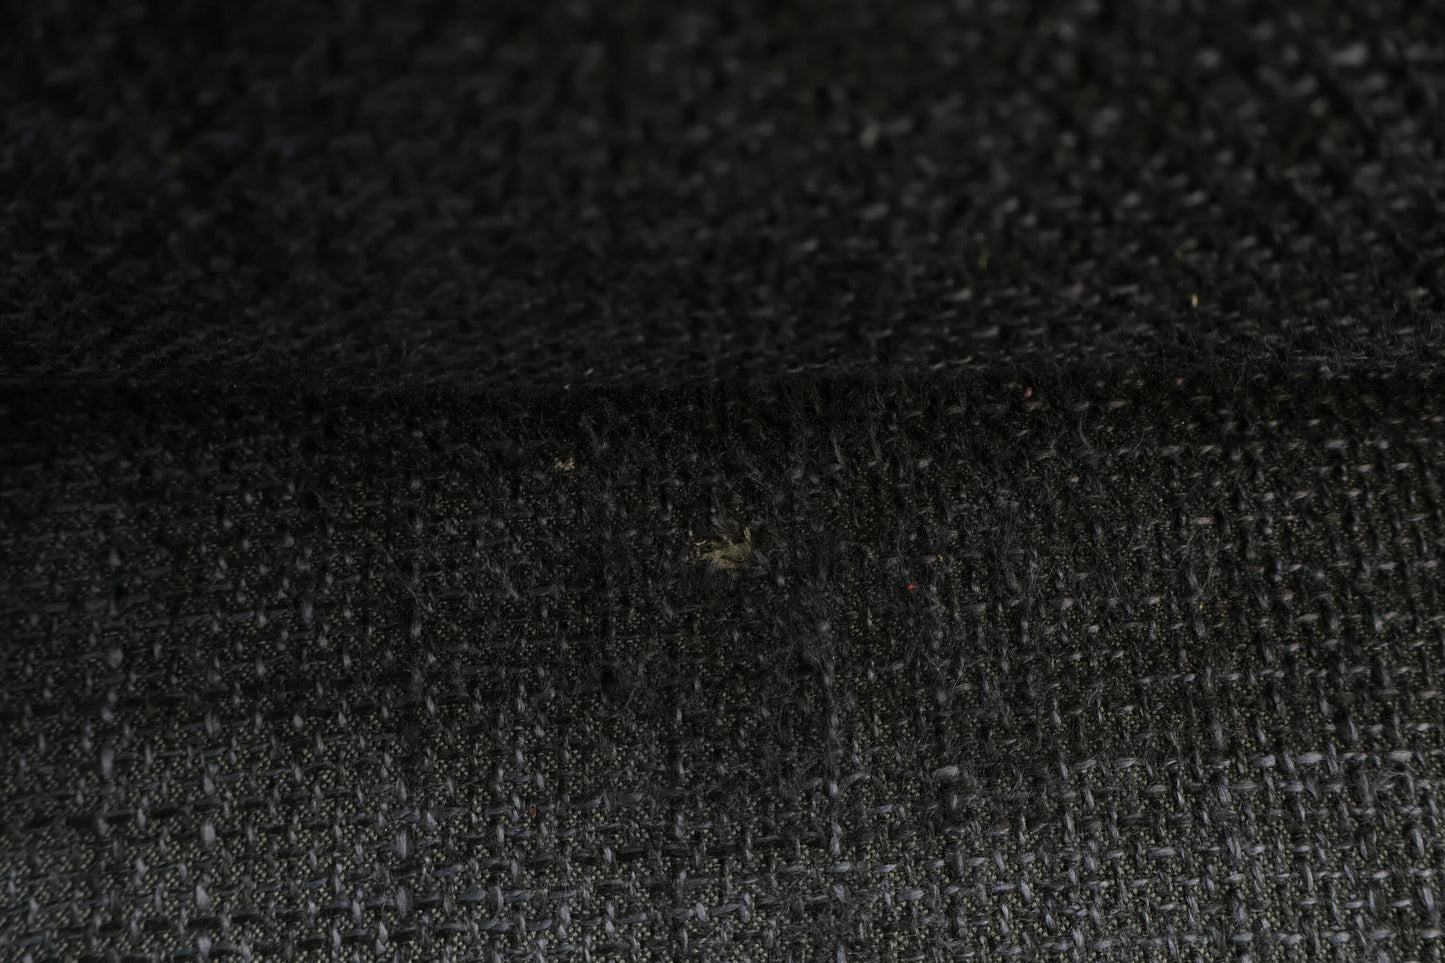 Nyrenset | Mørk grå u-sofa